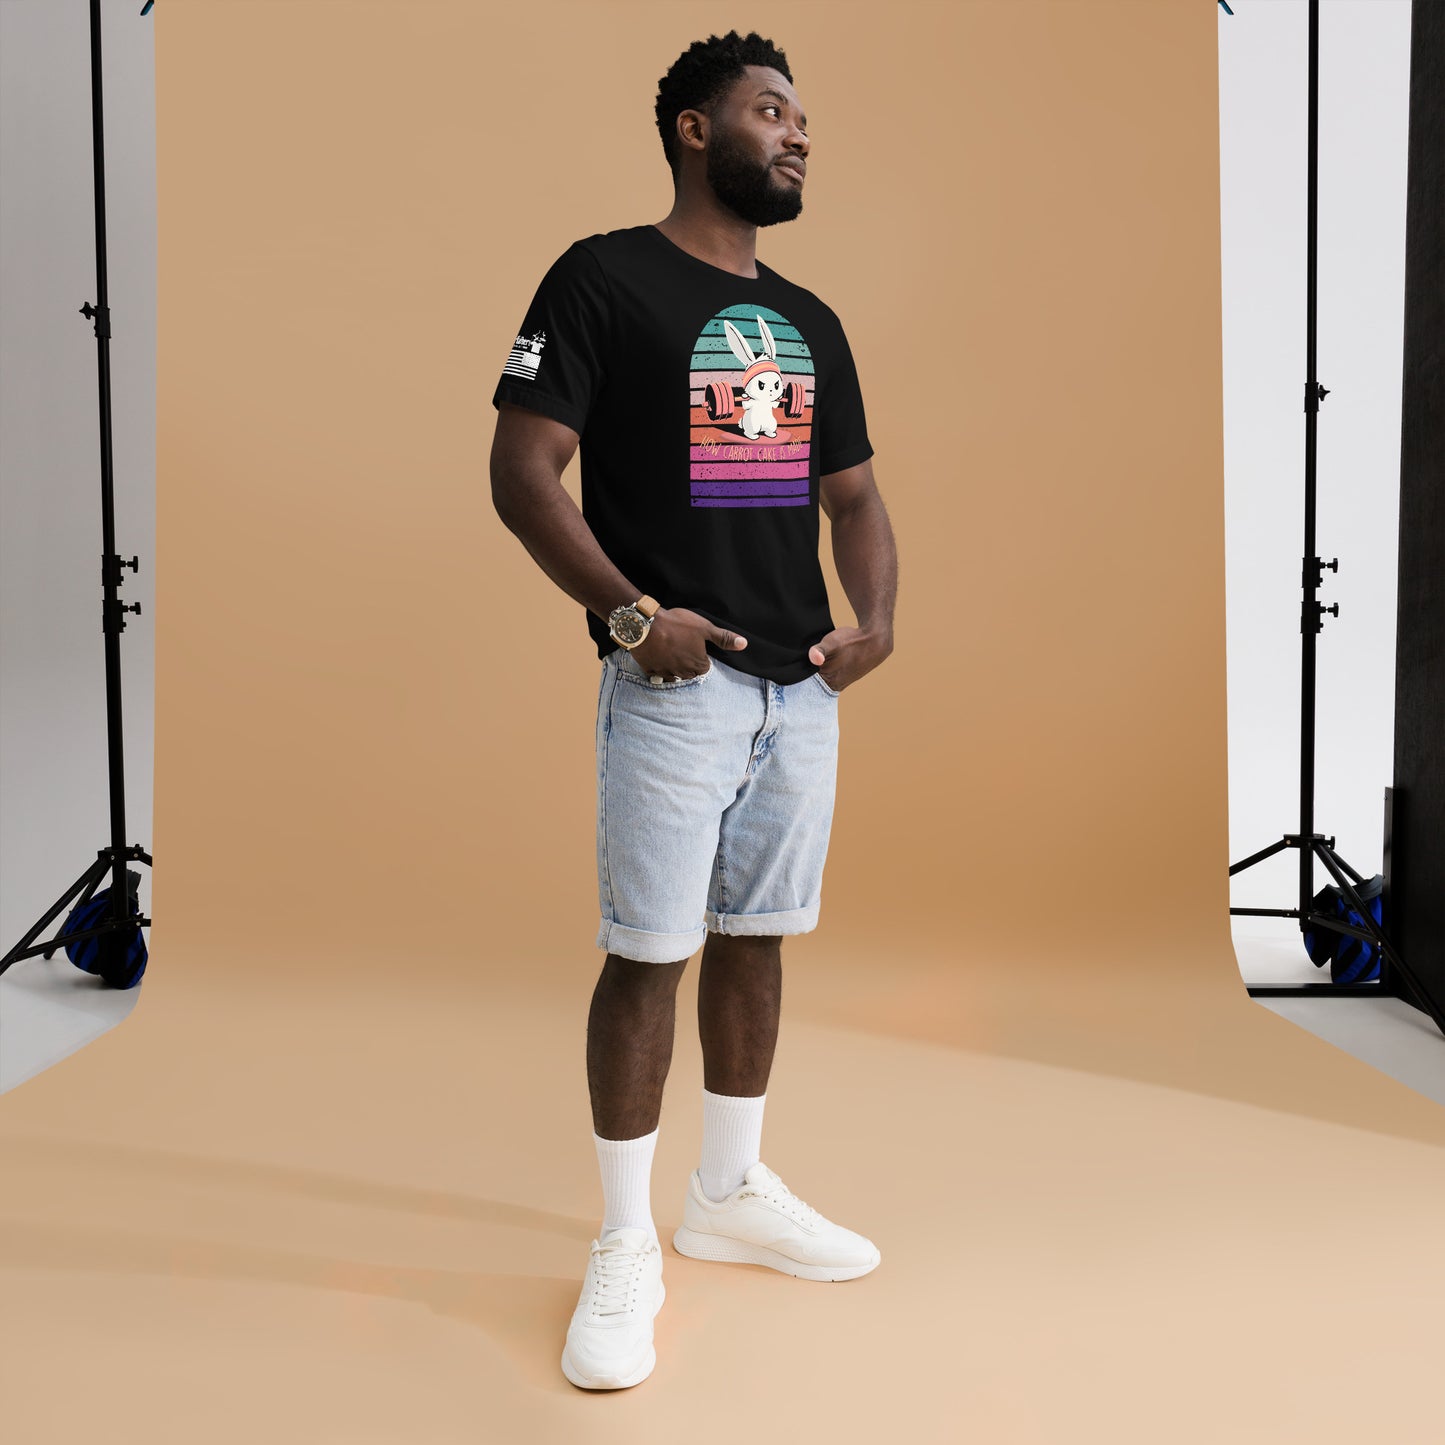 Bunny Squating - Premium T-Shirt (unisex) | TheShirtfather